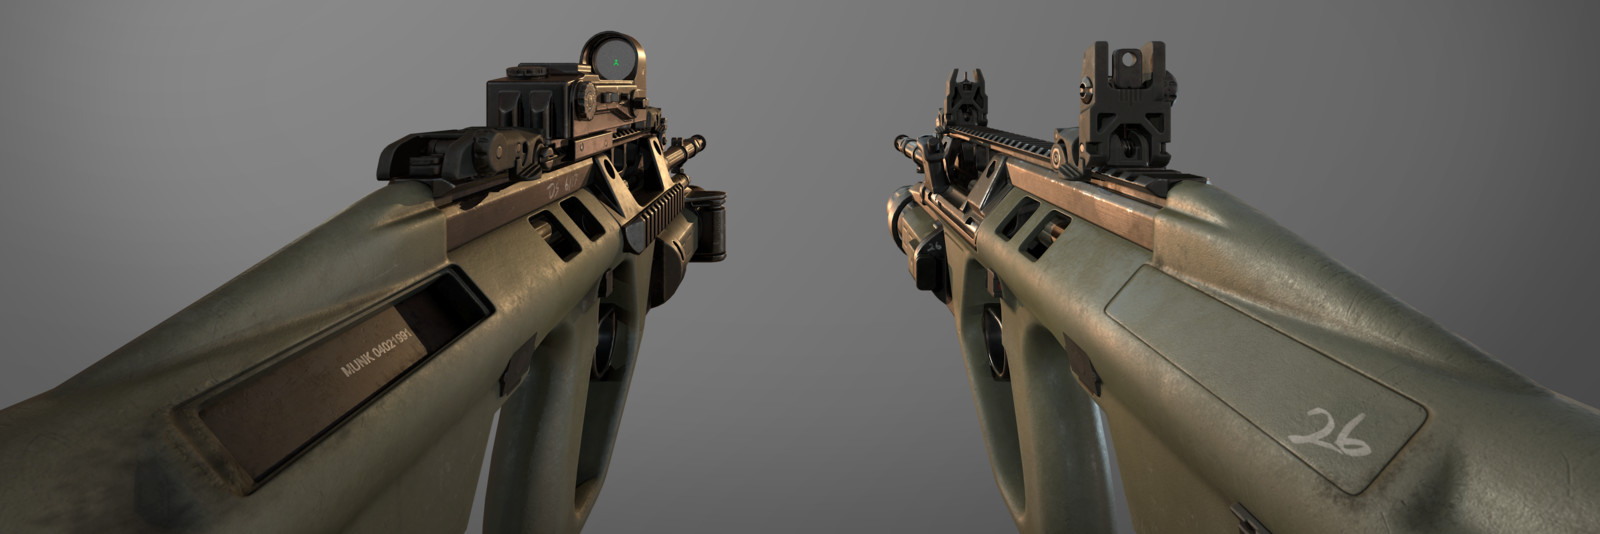 Fallout 4 r91 assault rifle от c1ph3rr фото 102